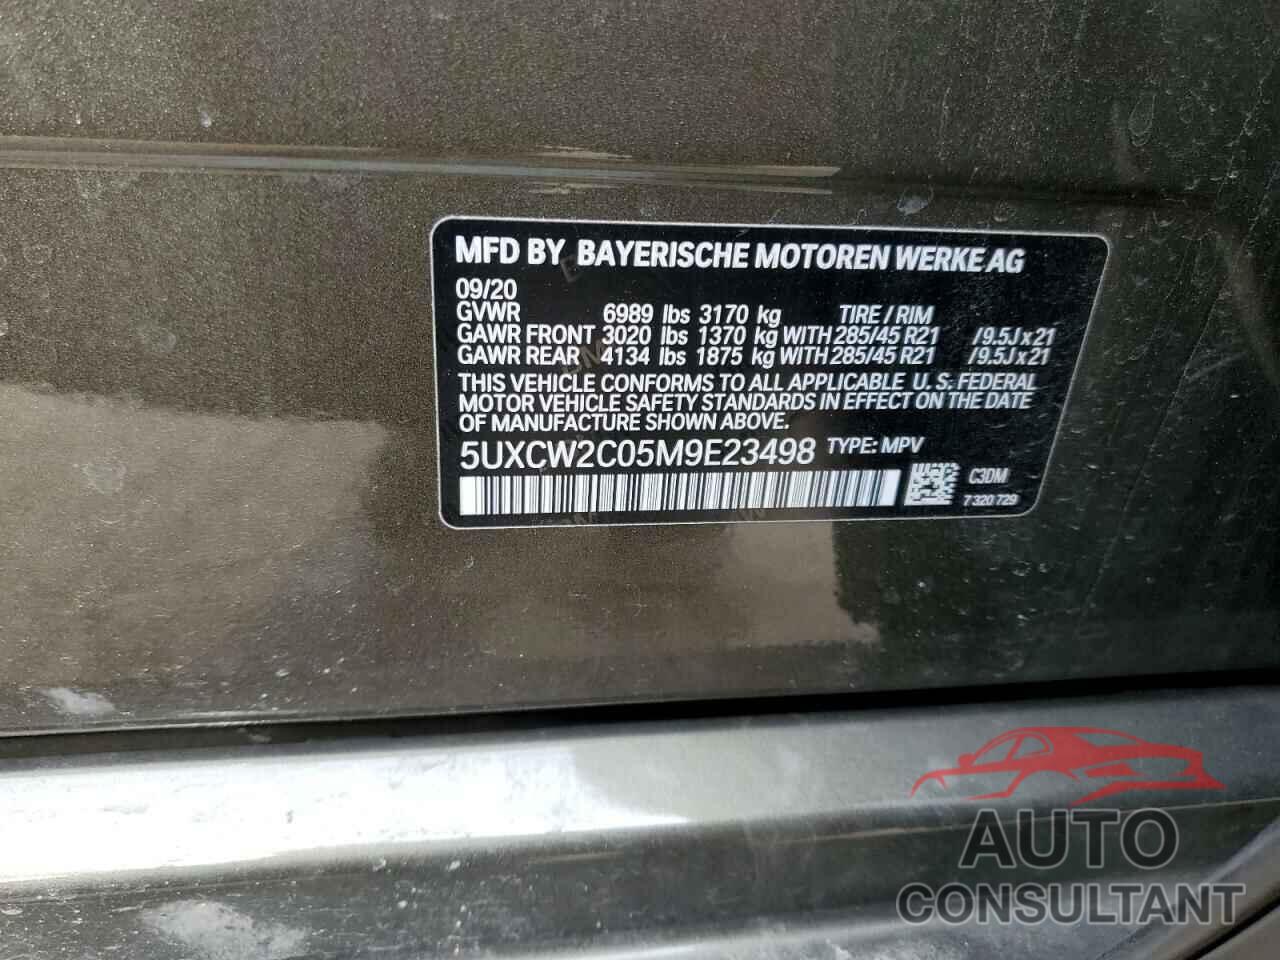 BMW X7 2021 - 5UXCW2C05M9E23498